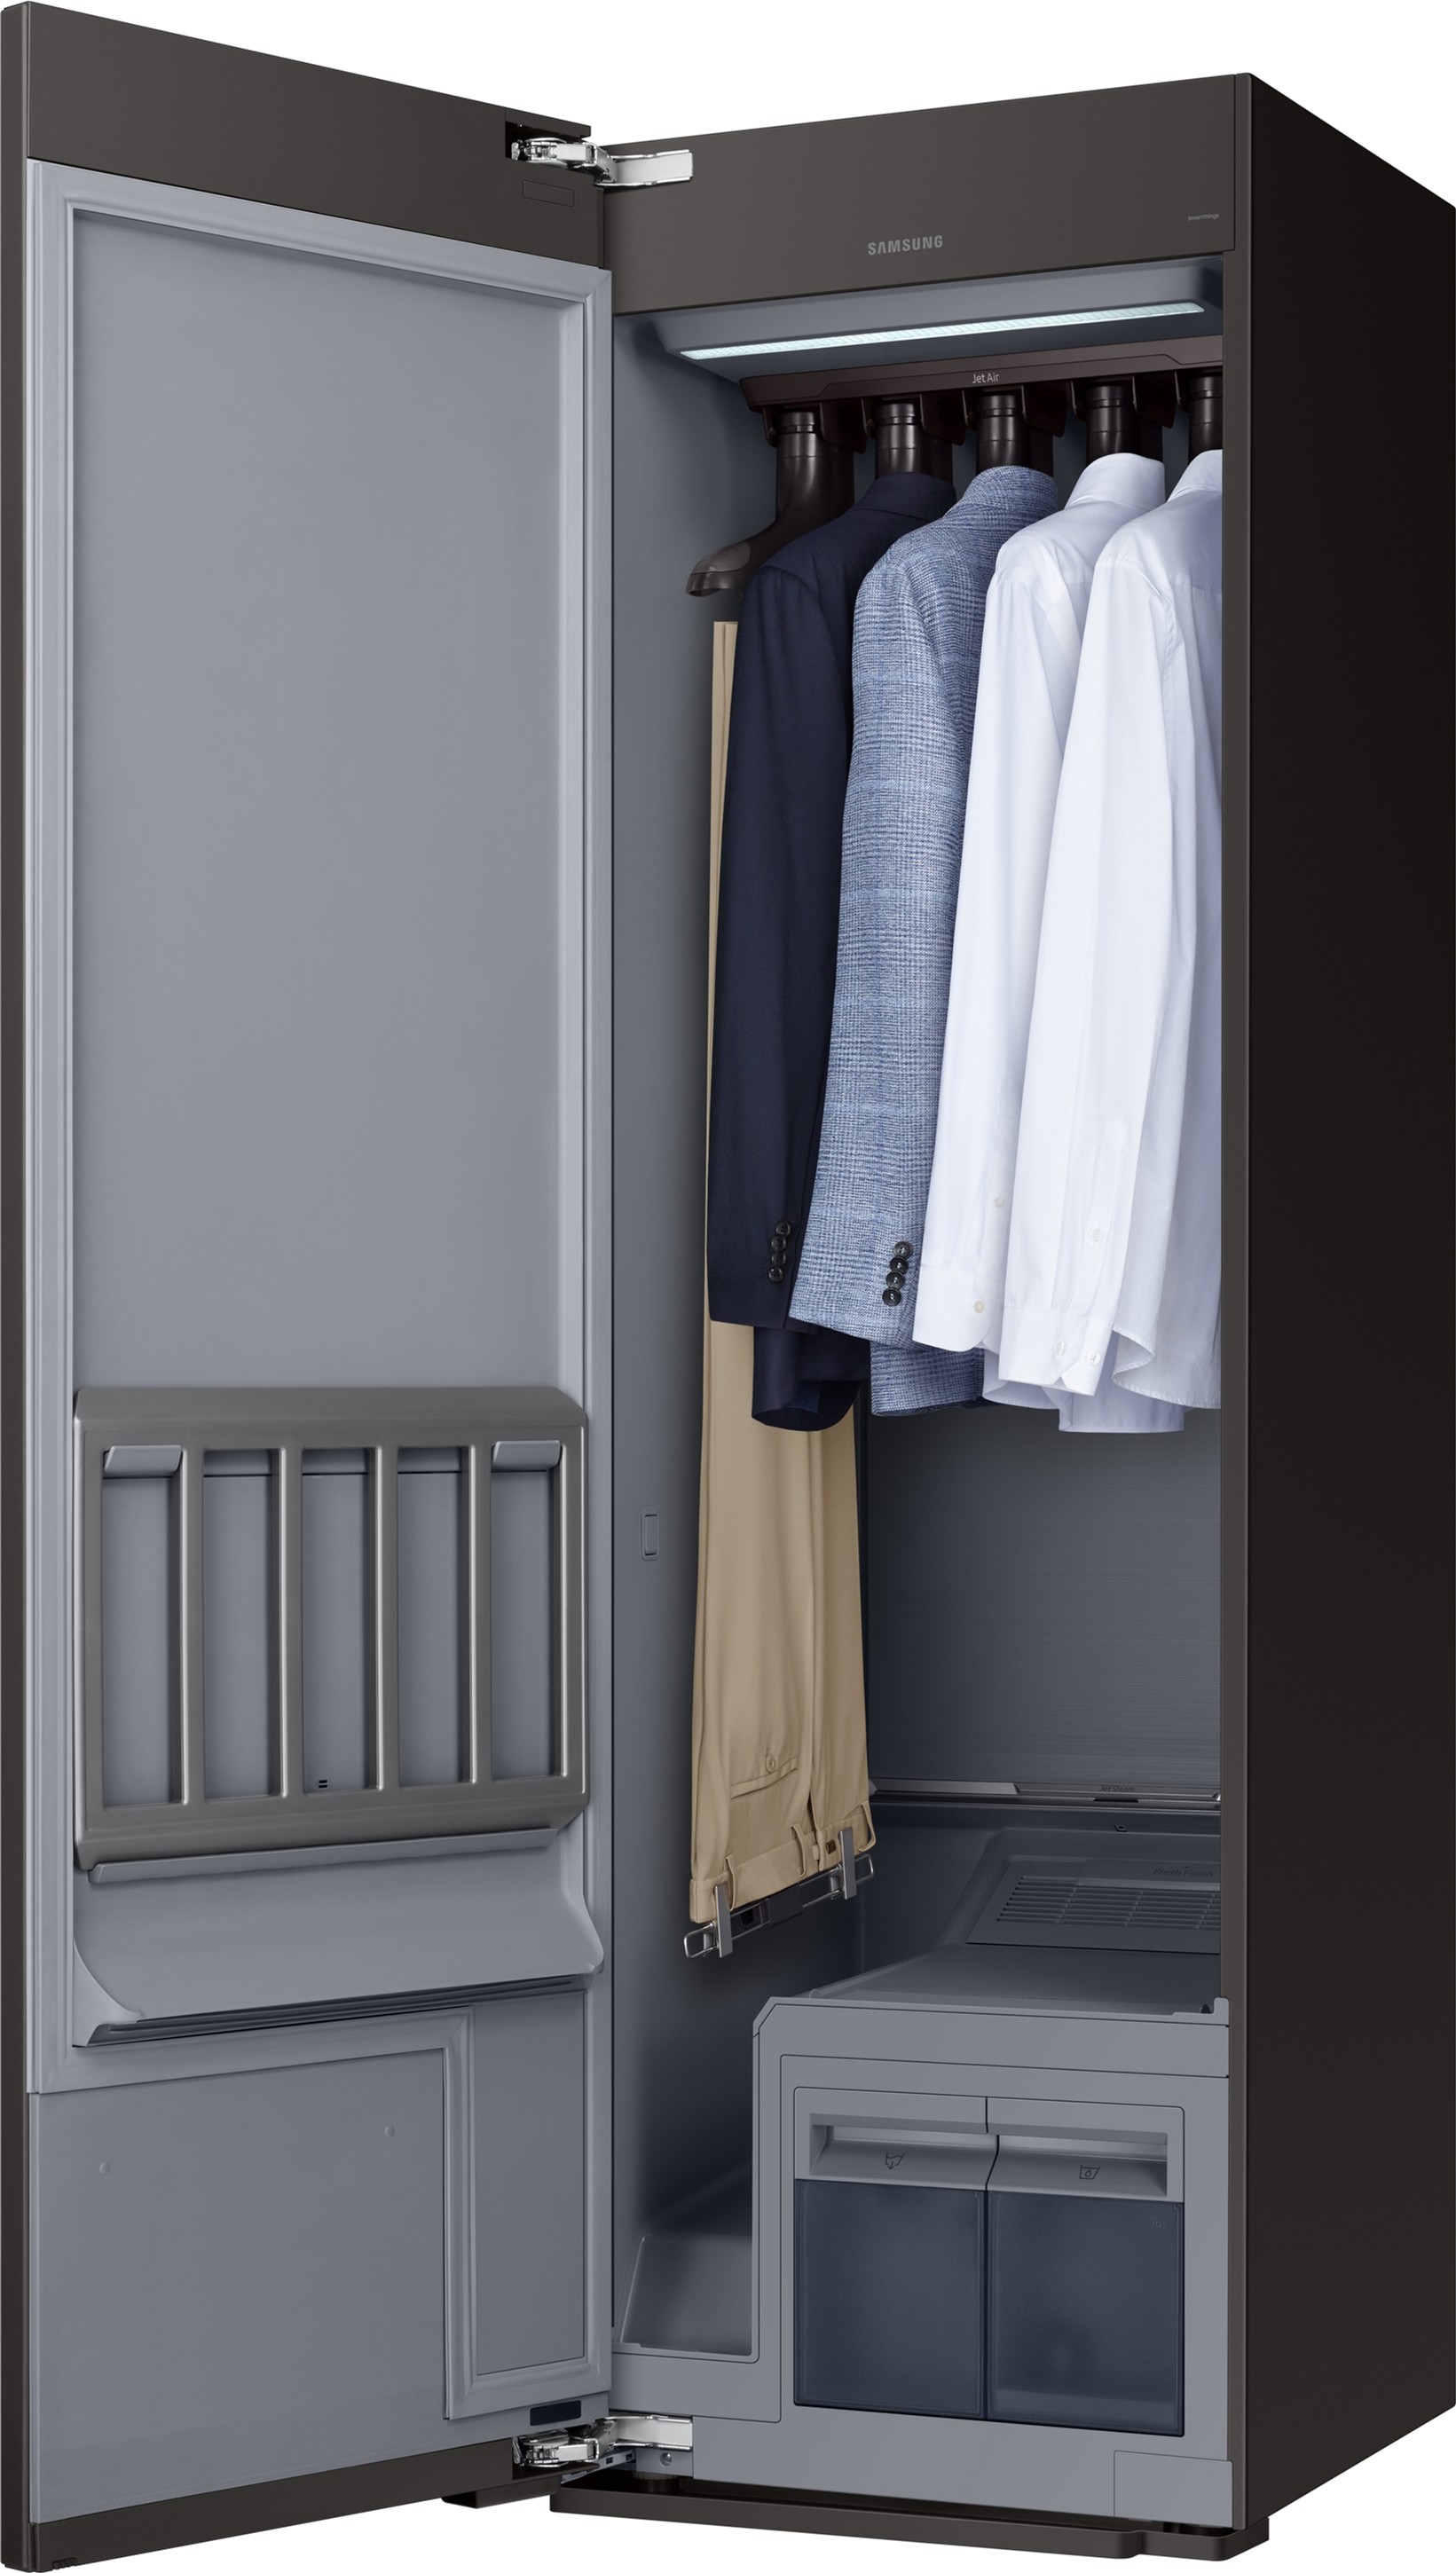 Паровой шкаф для ухода за одеждой Samsung DF10A9500CG/LP характеристики - фотография 7